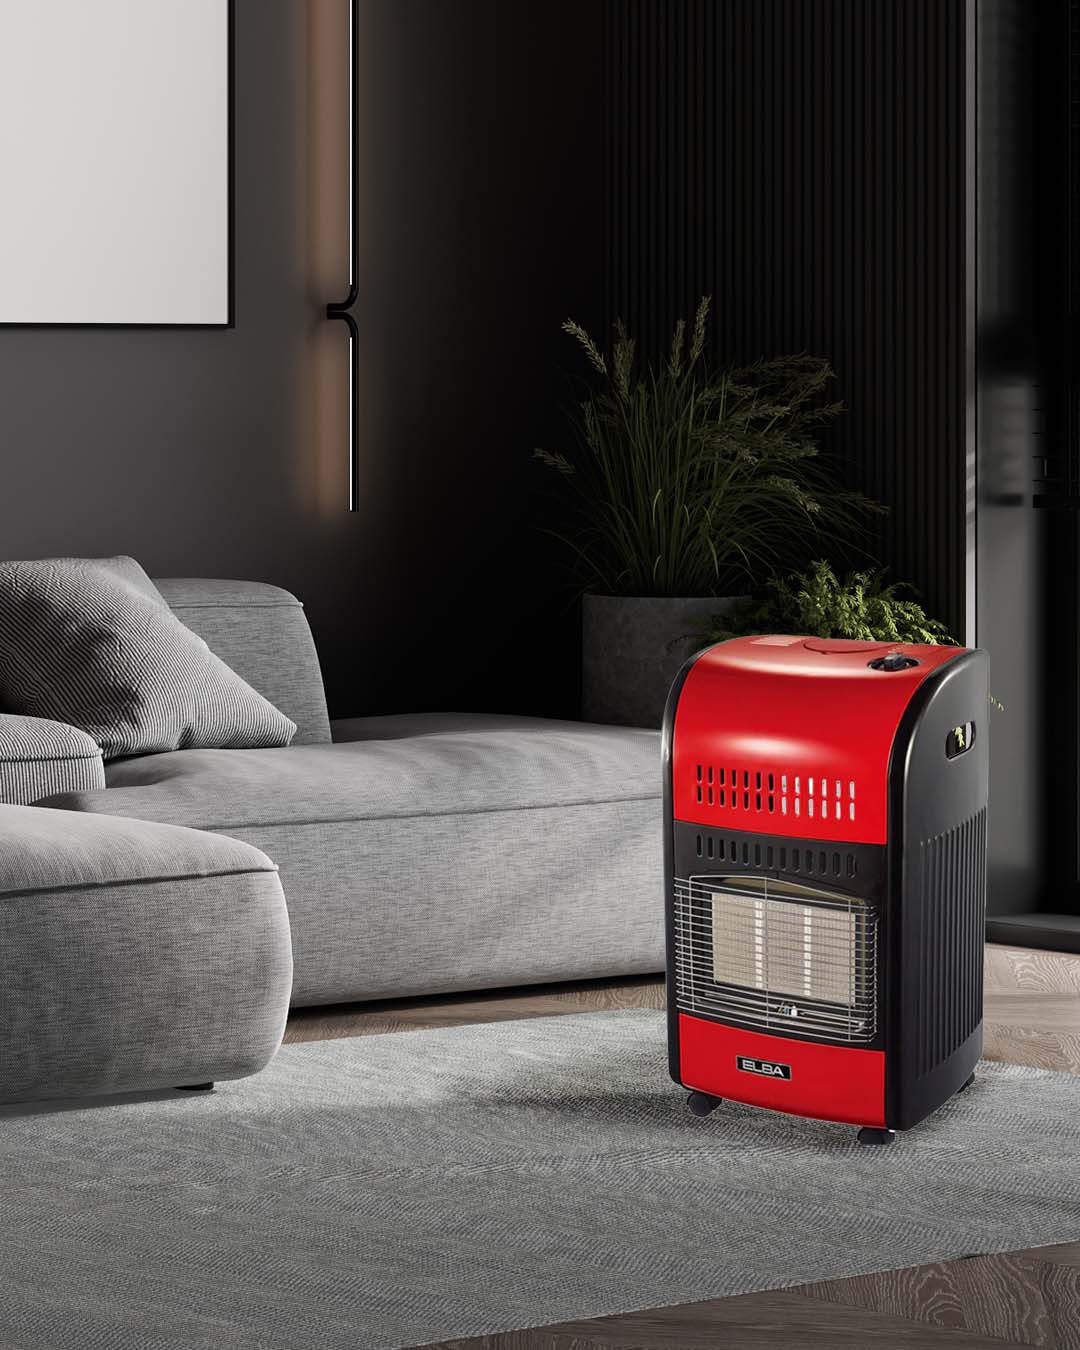 Elba 3-Panel Retro Portable Gas Heater Red 16/EL100RR